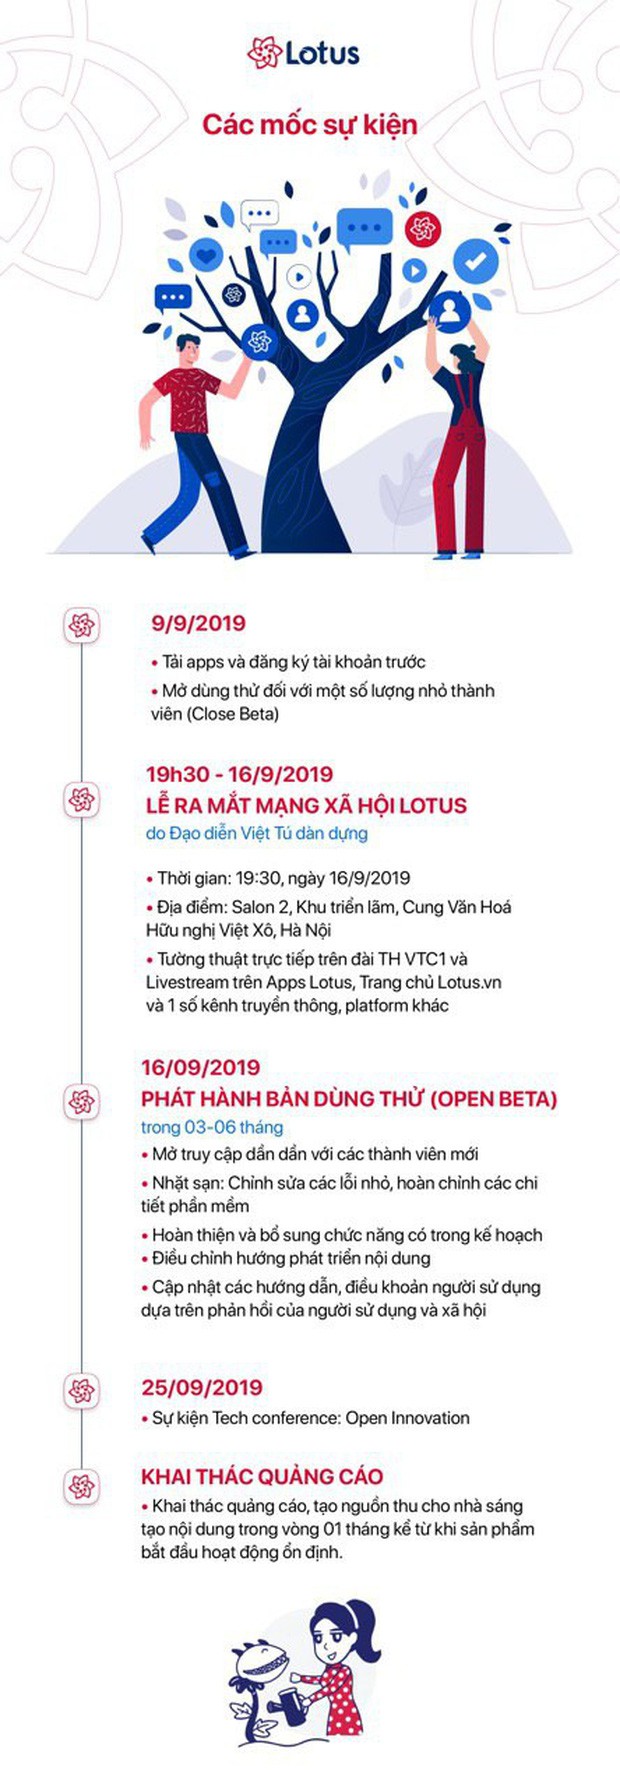 Lễ ra mắt MXH Lotus chính là sự kiện hot nhất tháng 9 này: Gây bão từ ngay chiếc thiệp mời ma thuật, dự kiến quy tụ hàng trăm celebs, creators hàng đầu Việt Nam - Ảnh 10.